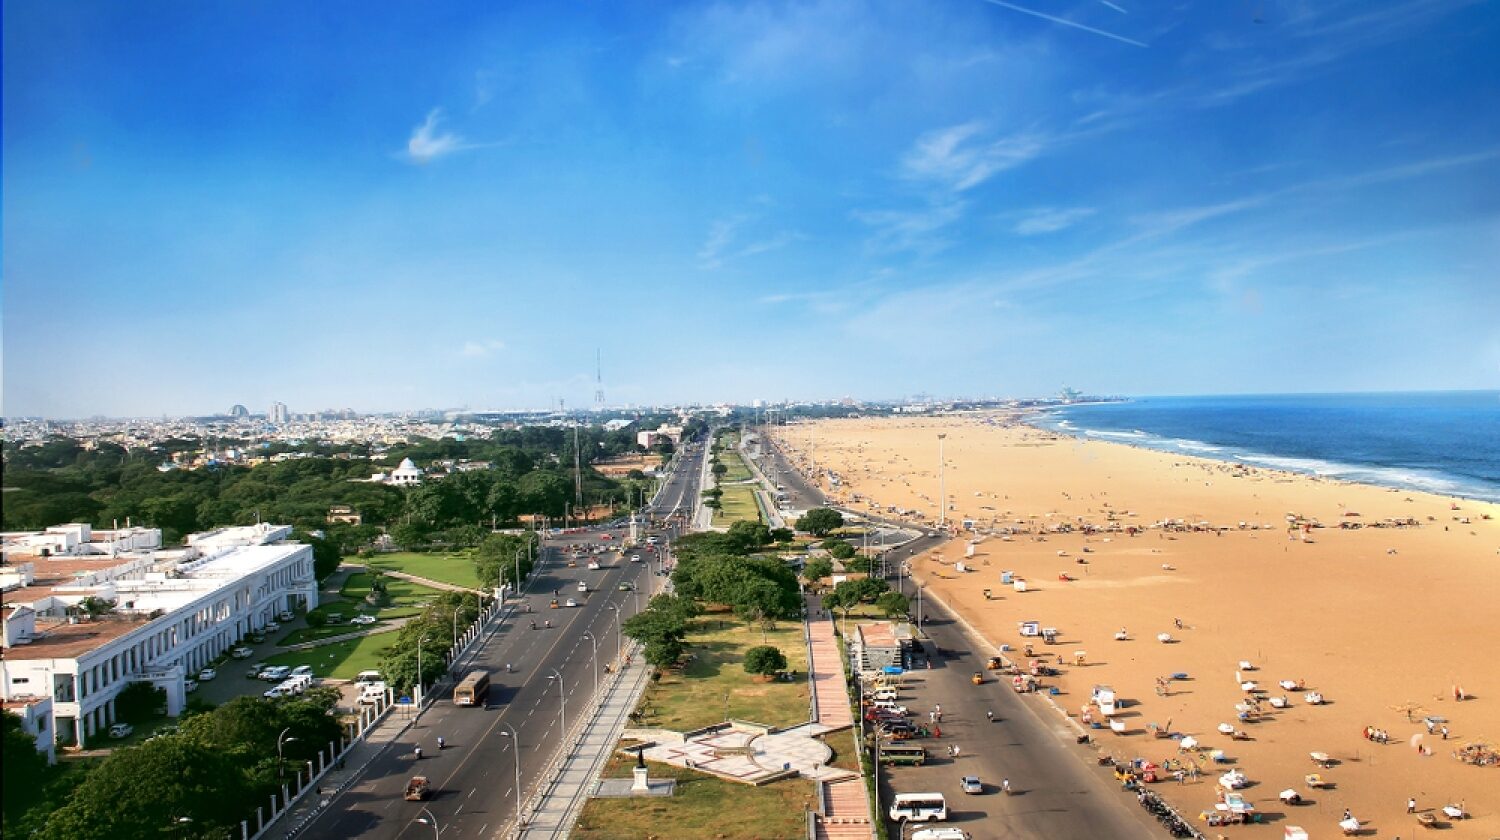 Marina Beach chennai city tamil nadu india bay of bengal transformed e1682930419302